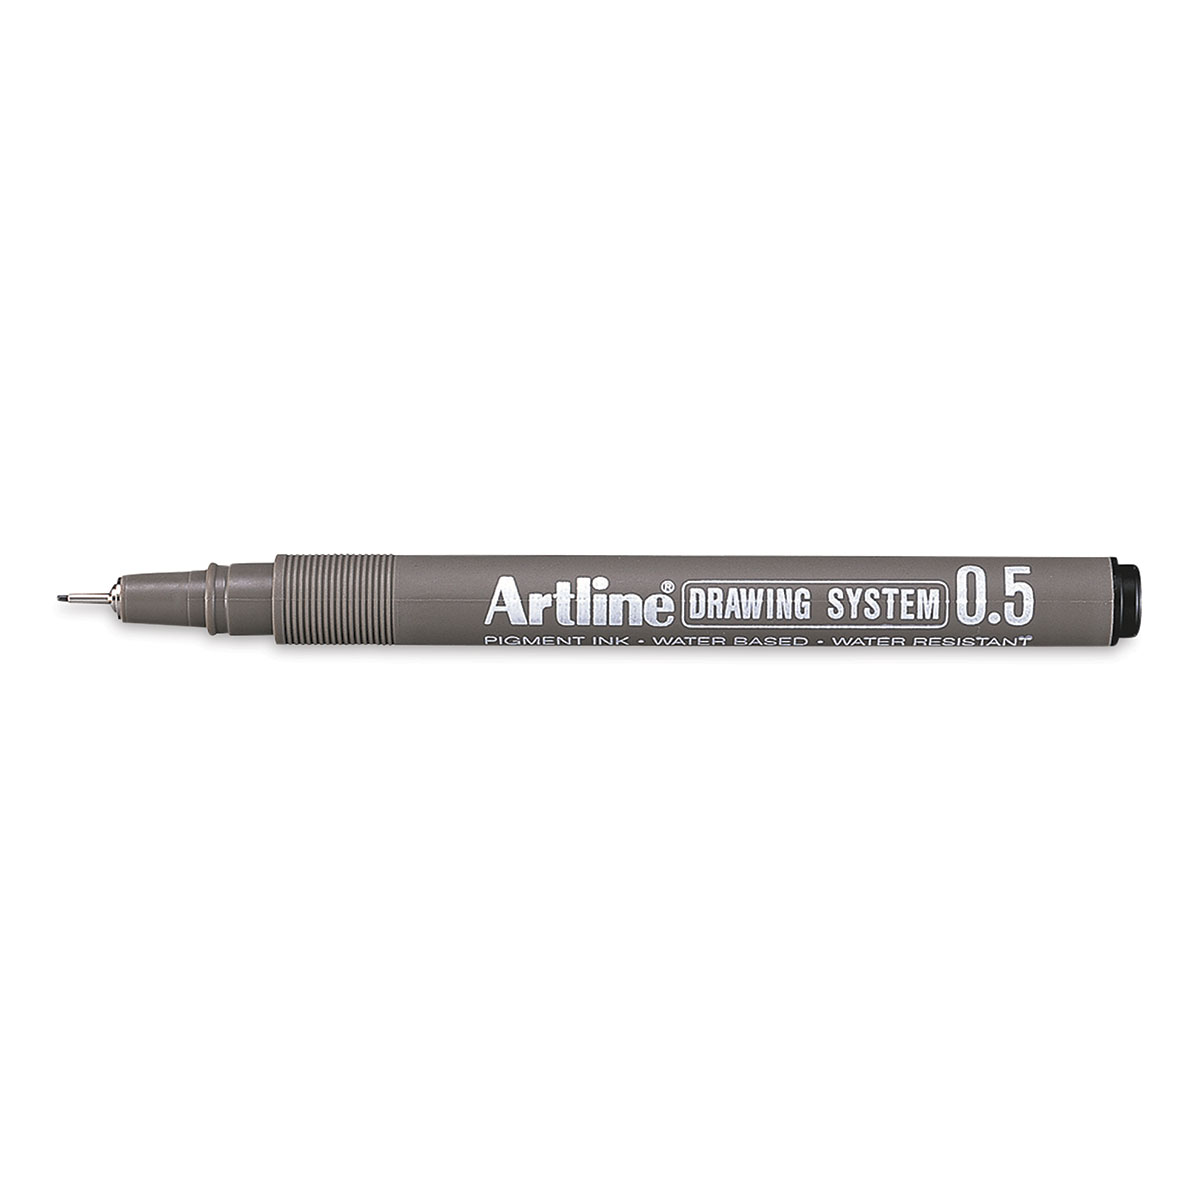 Artline Drawing Pen - 0.5 mm Tip, Black